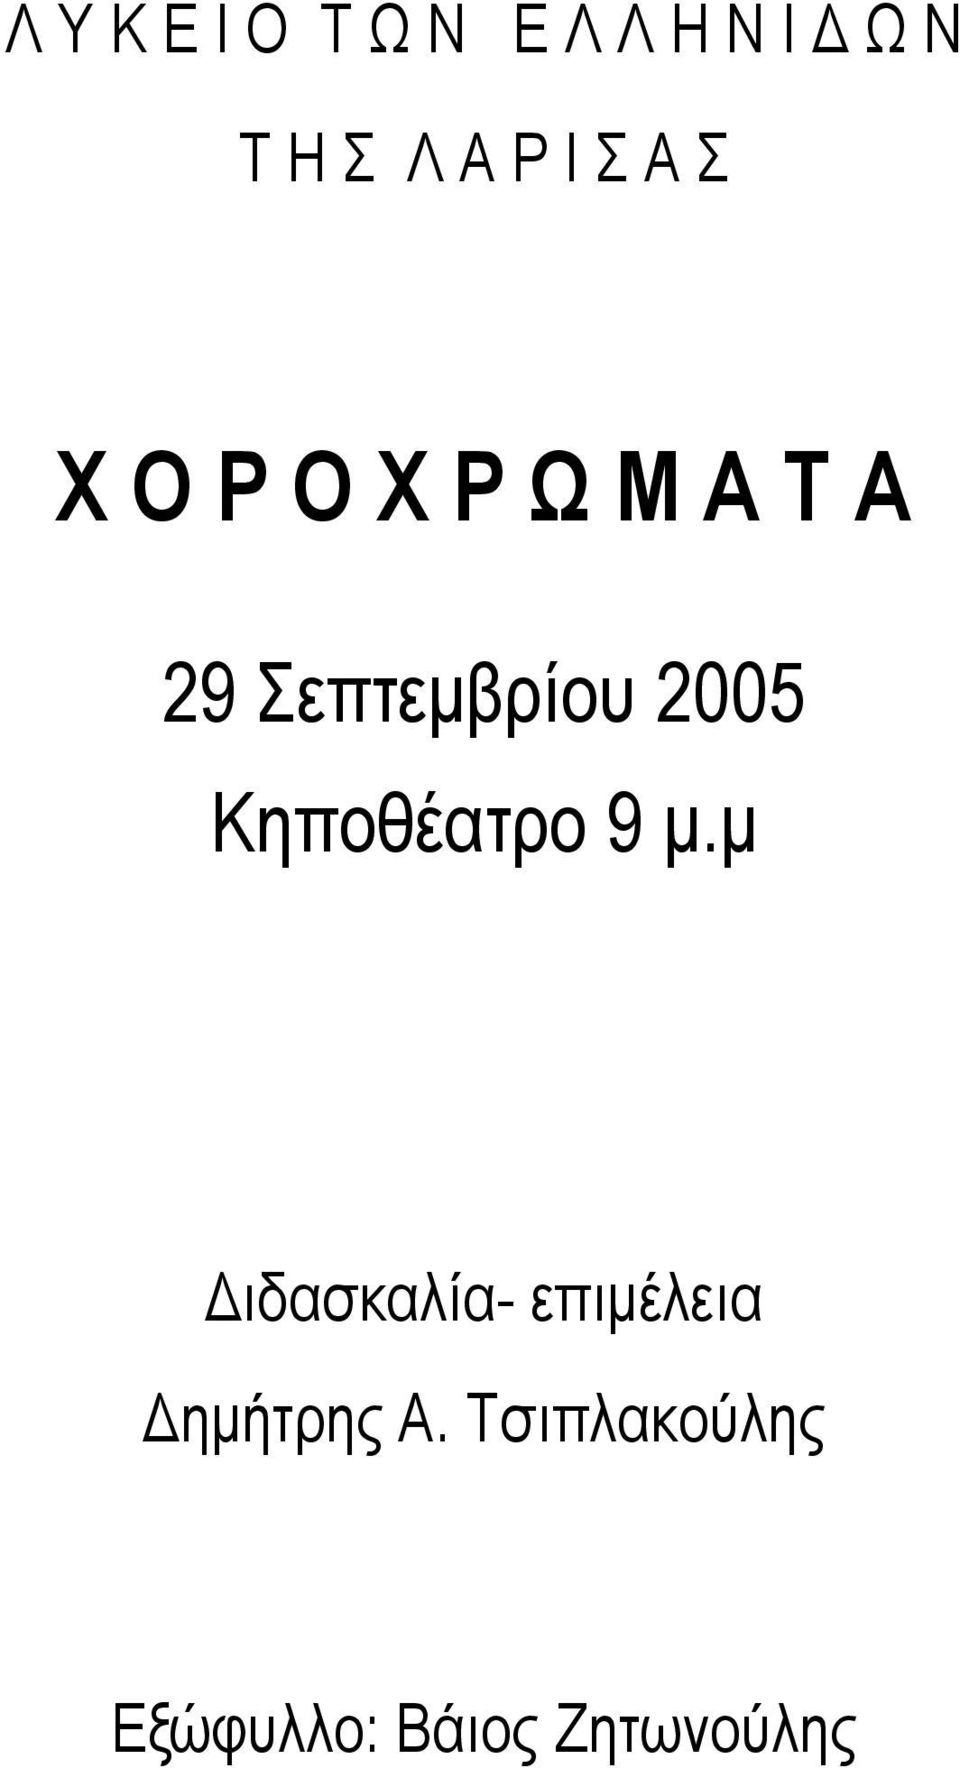 2005 Κηποθέατρο 9 µ.